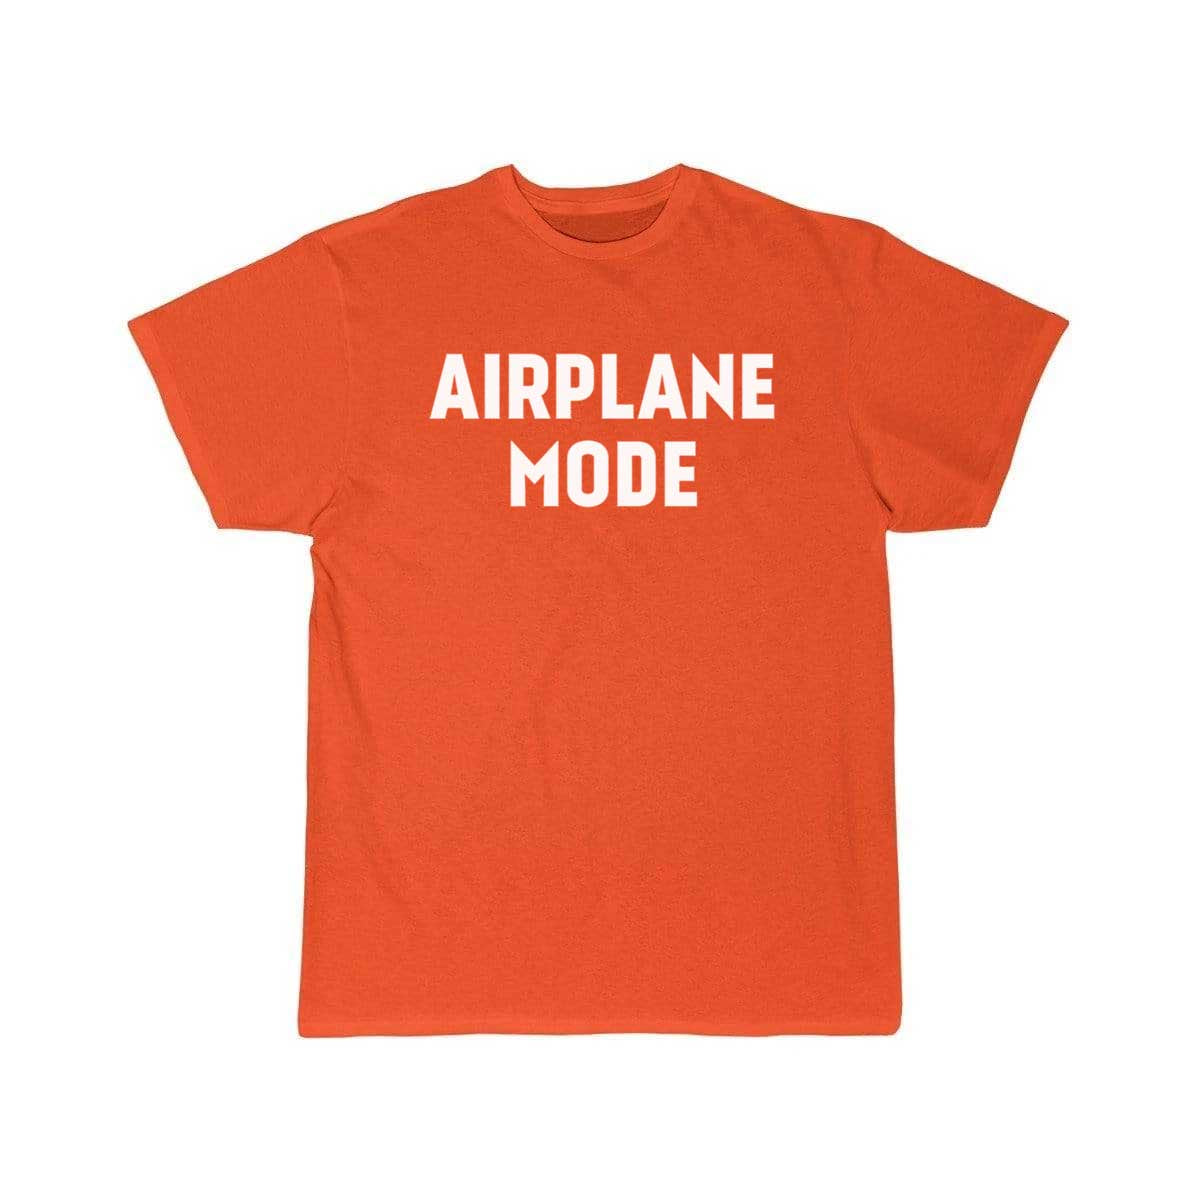 Funny Airplane Mode Joke Novelty T-SHIRT THE AV8R